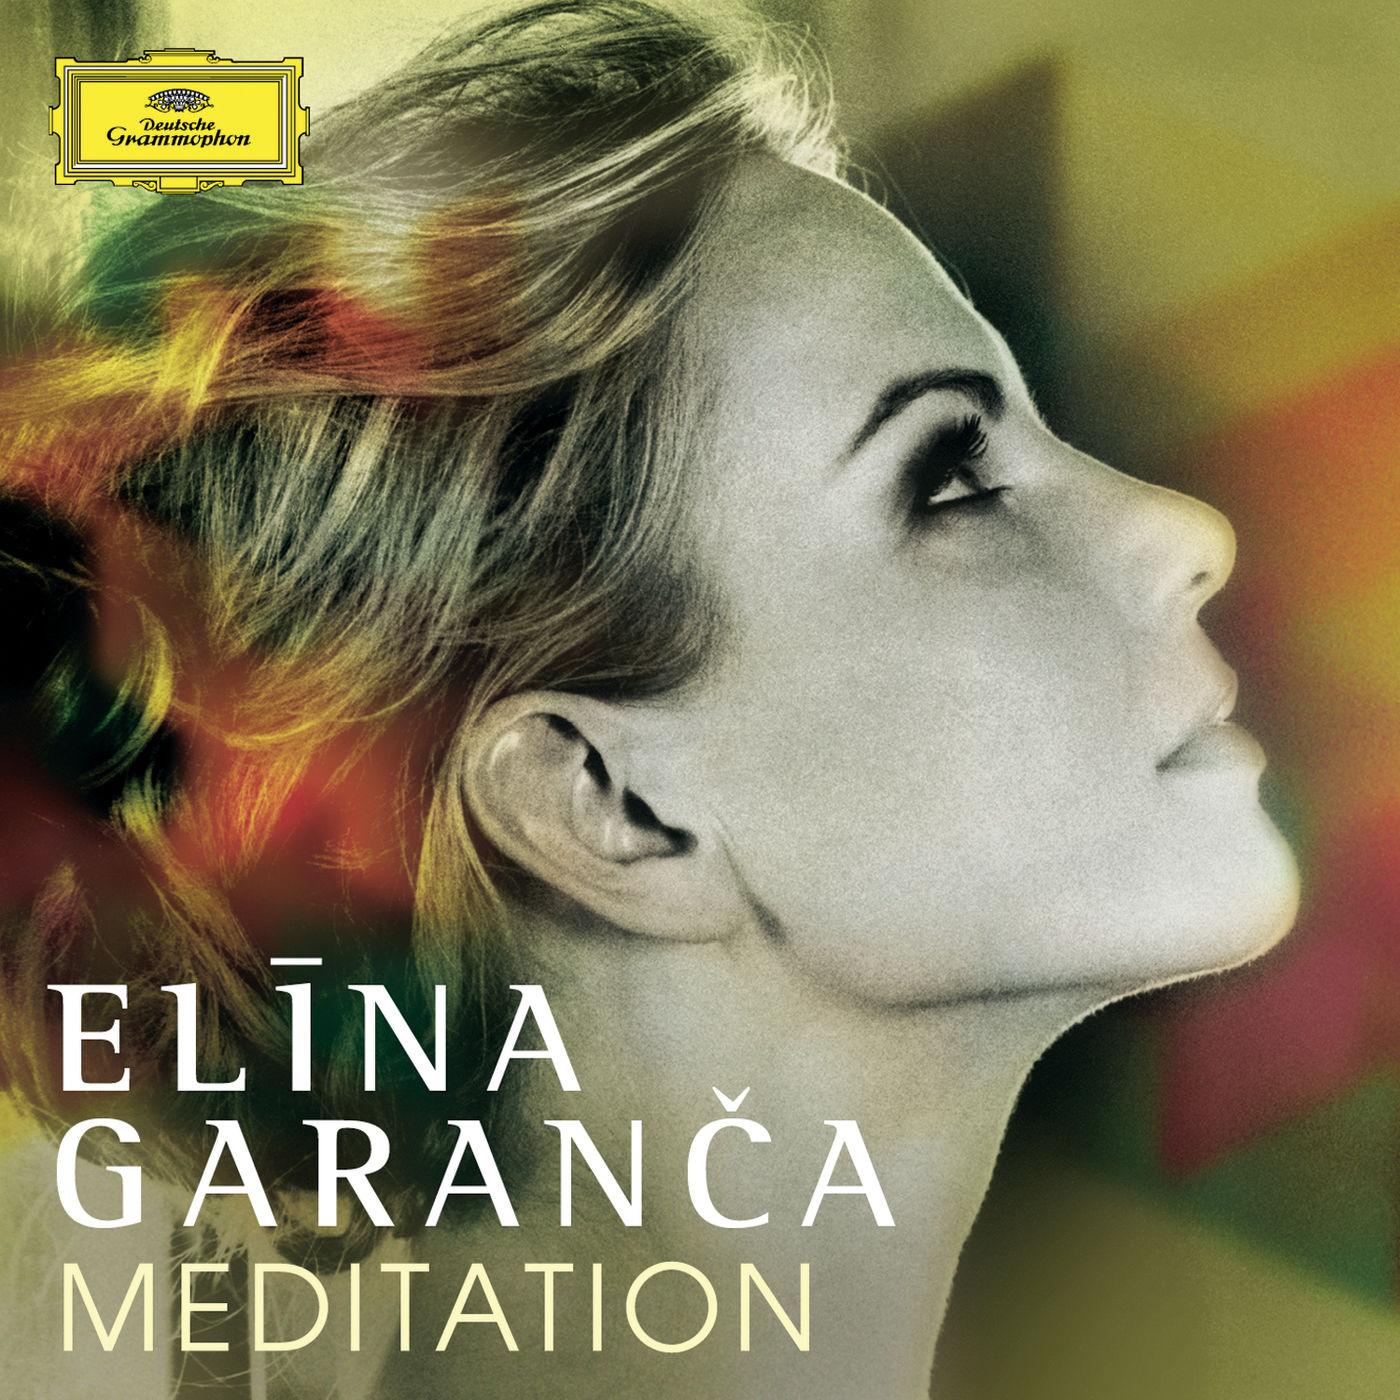 Elina Garanca - Meditation (2014) [FLAC 24bit/96kHz]